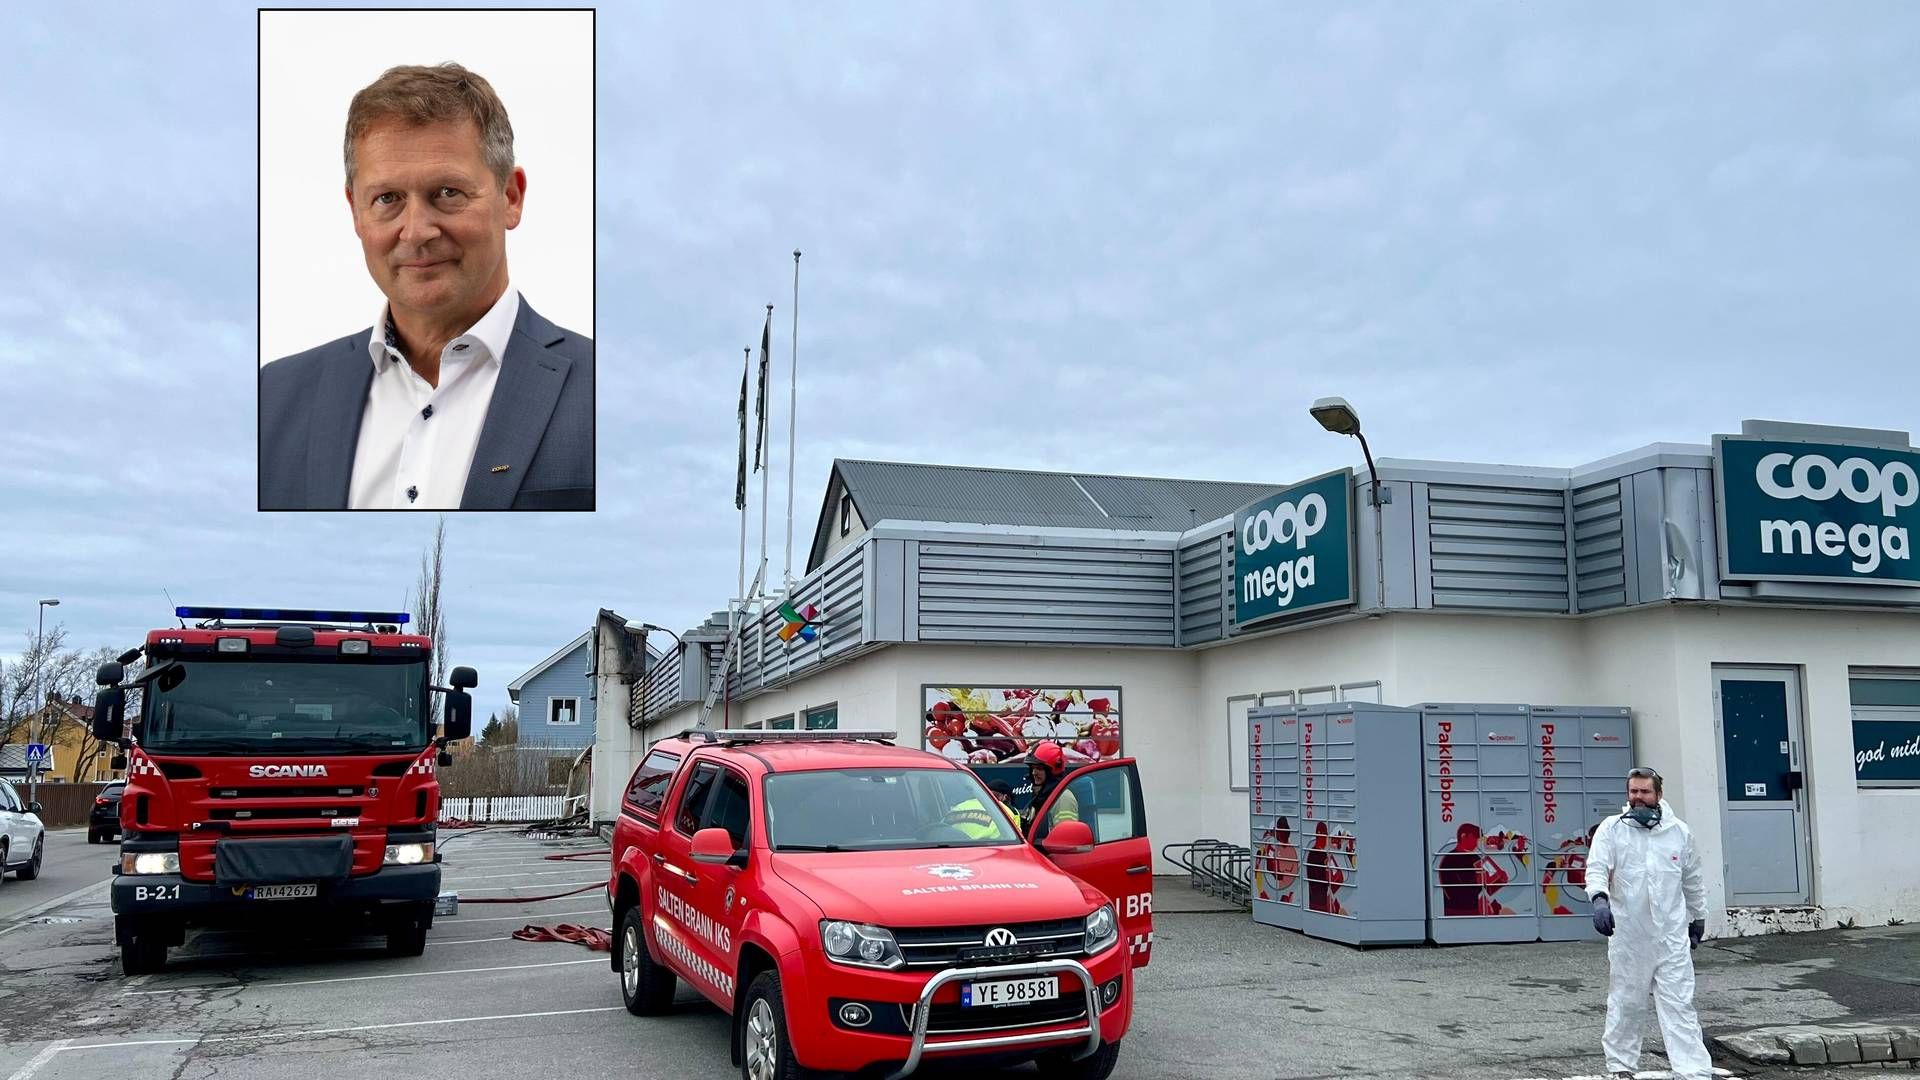 En Coop Mega-butikk i Bodø ble kraftig skadet i brann natt til lørdag. Innfelt er administrerende direktør Lars Arve Jakobsen i Coop Nordland. | Foto: Coop Nordland